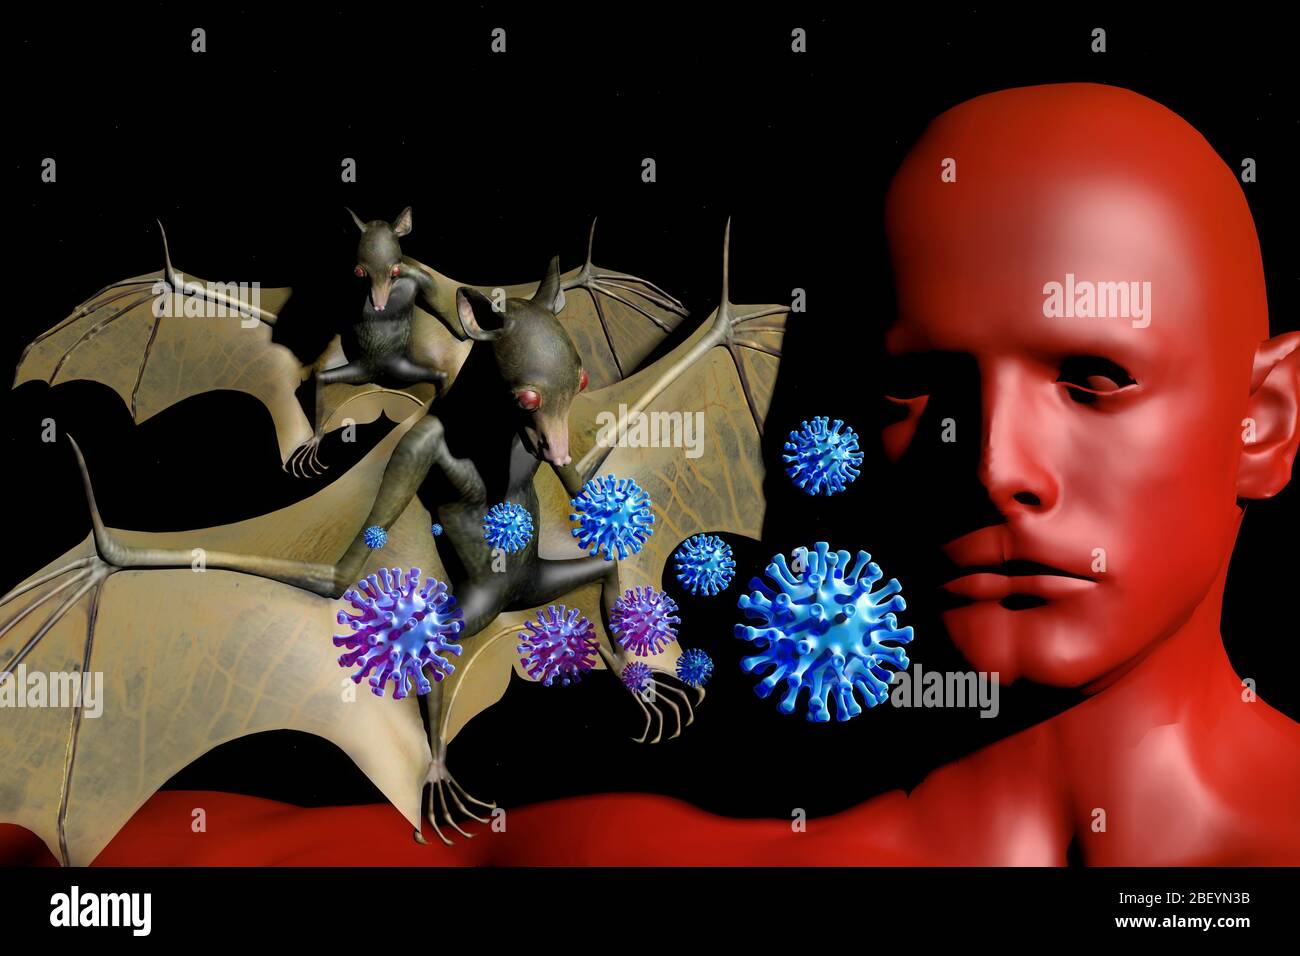 viele Viren erwern von der Tierwelt zum Menschen. Haeufig spielen Flédermaeuse dabei eine grosse Rolle - Symbolbild: CGI-Visualizierung: Coronavirus Banque D'Images